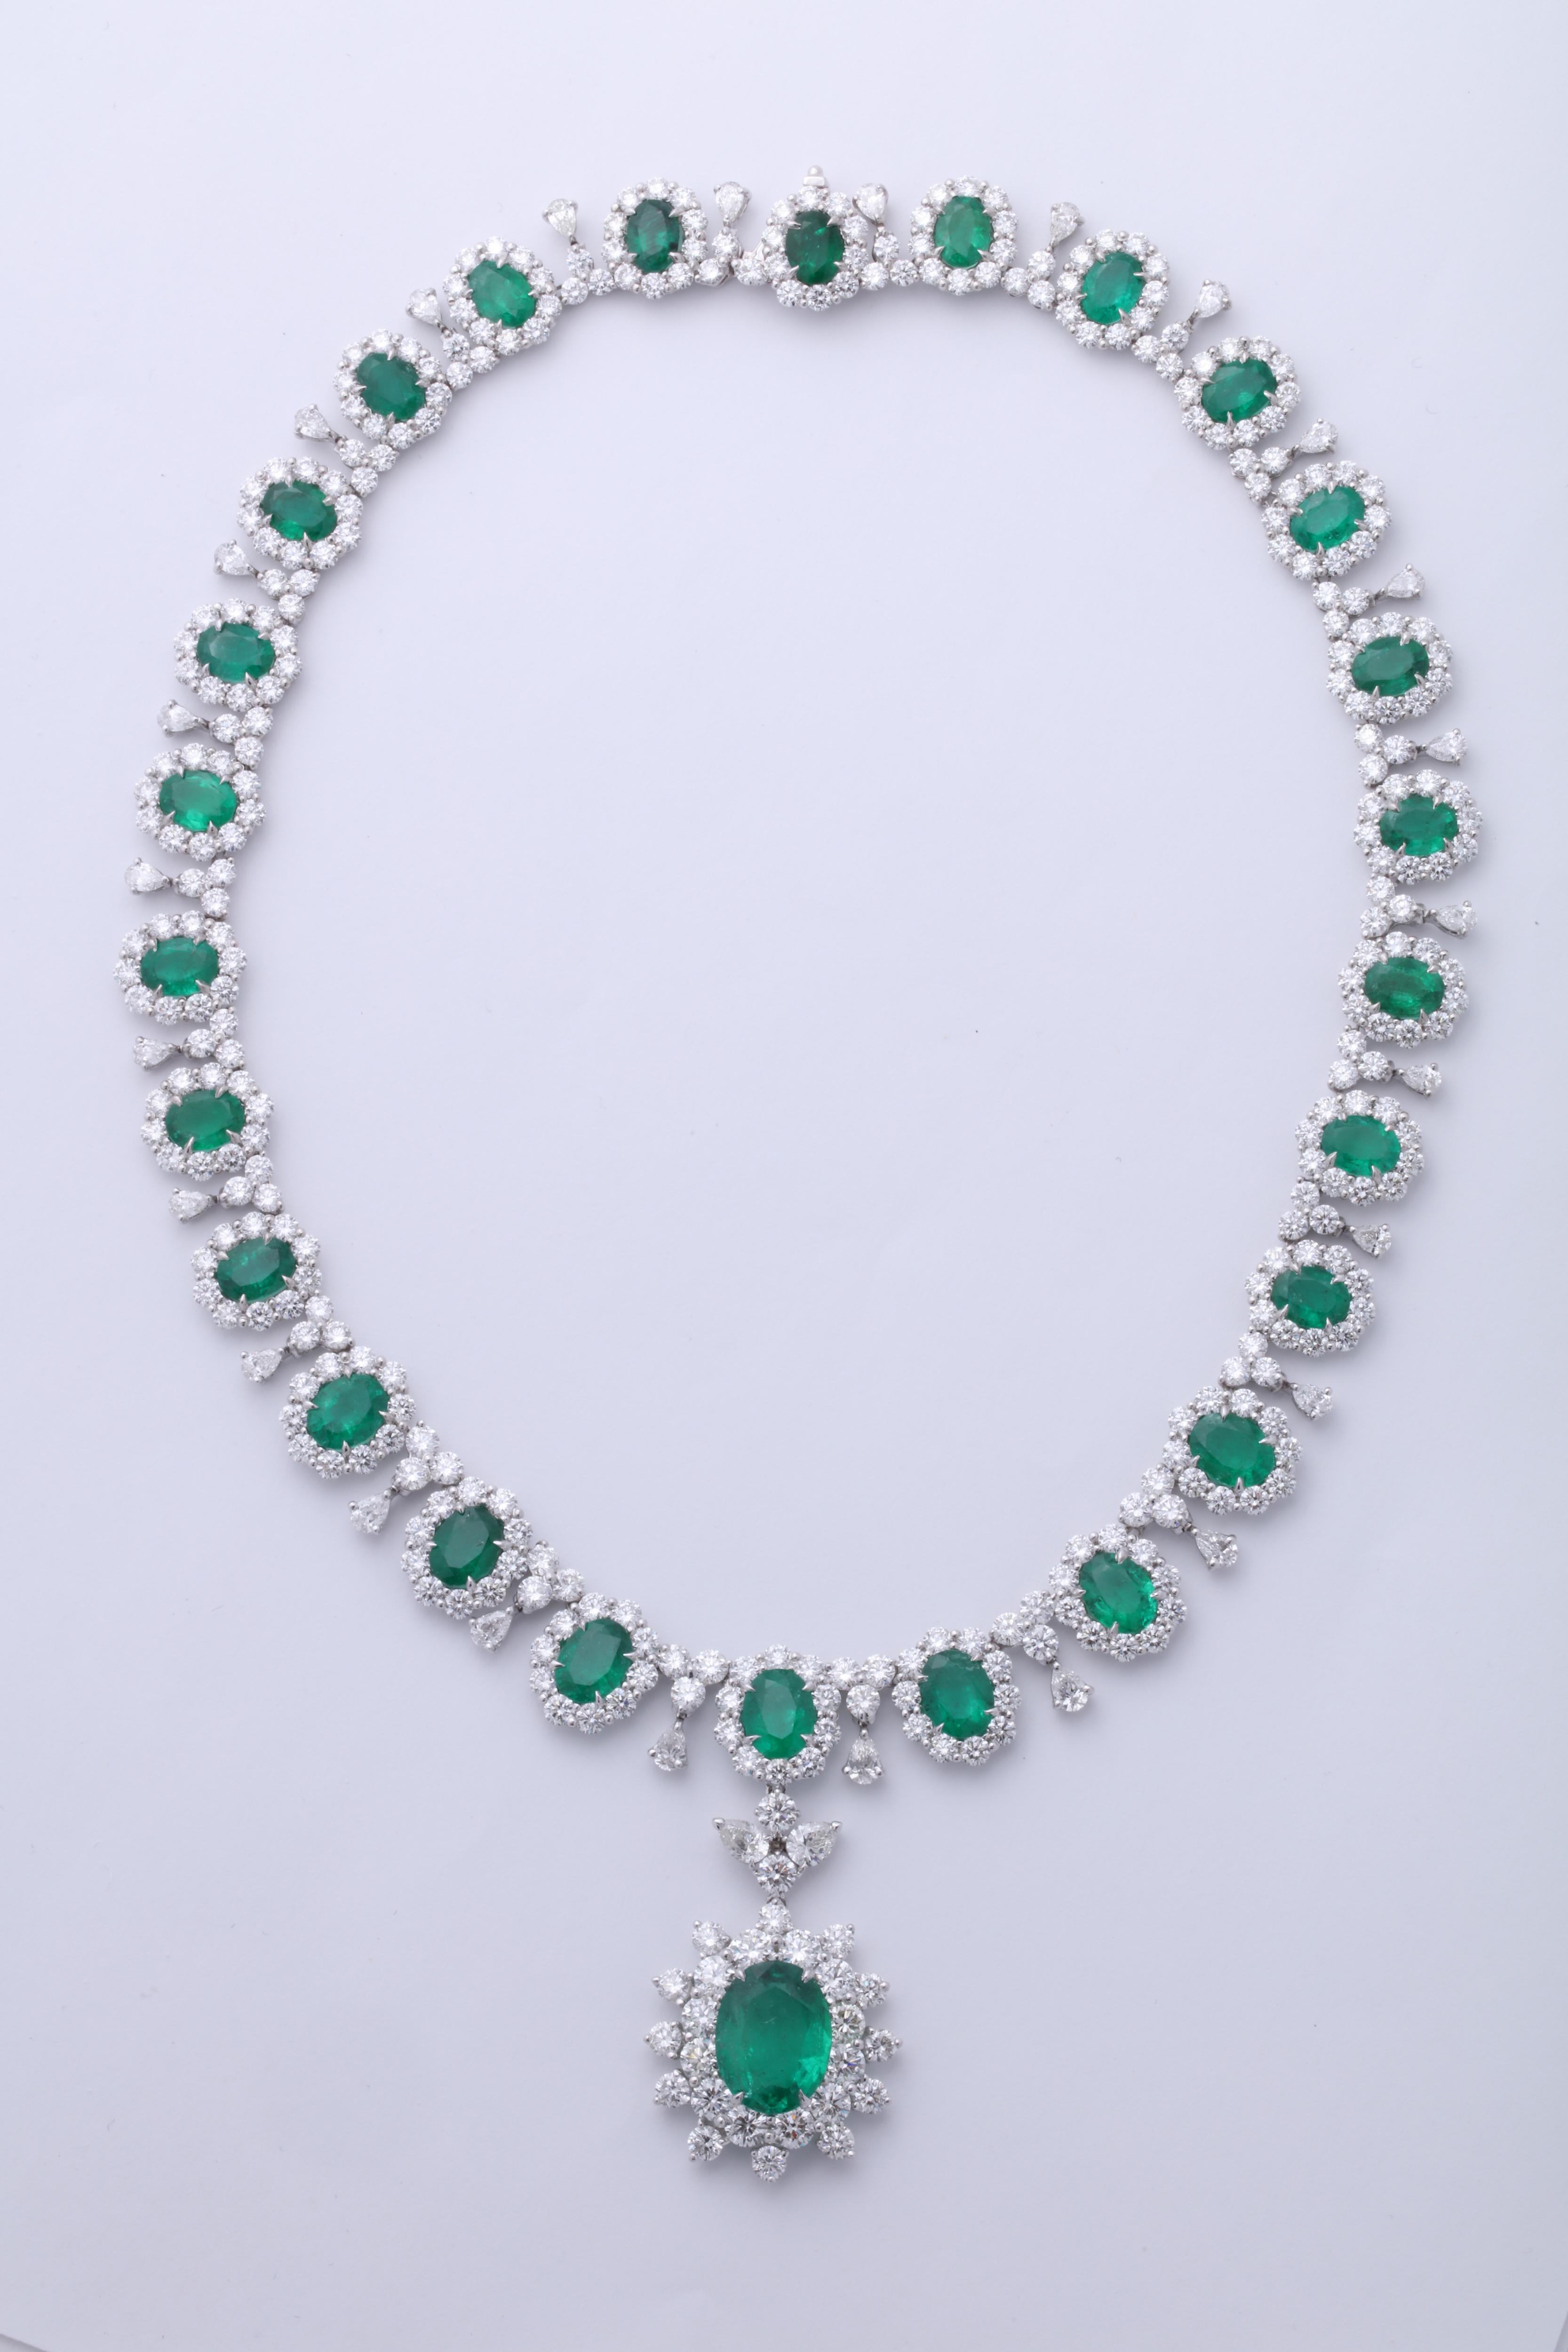 
Ein großes Smaragd- und Diamantencollier.

39.09 Karat feiner grüner Smaragd, 48,47 Karat weiße runde und birnenförmige Diamanten. 

In Platin gefasst

Die Halskette misst 16,5 Zoll, kann aber leicht angepasst werden. 
Es ist auch möglich, den